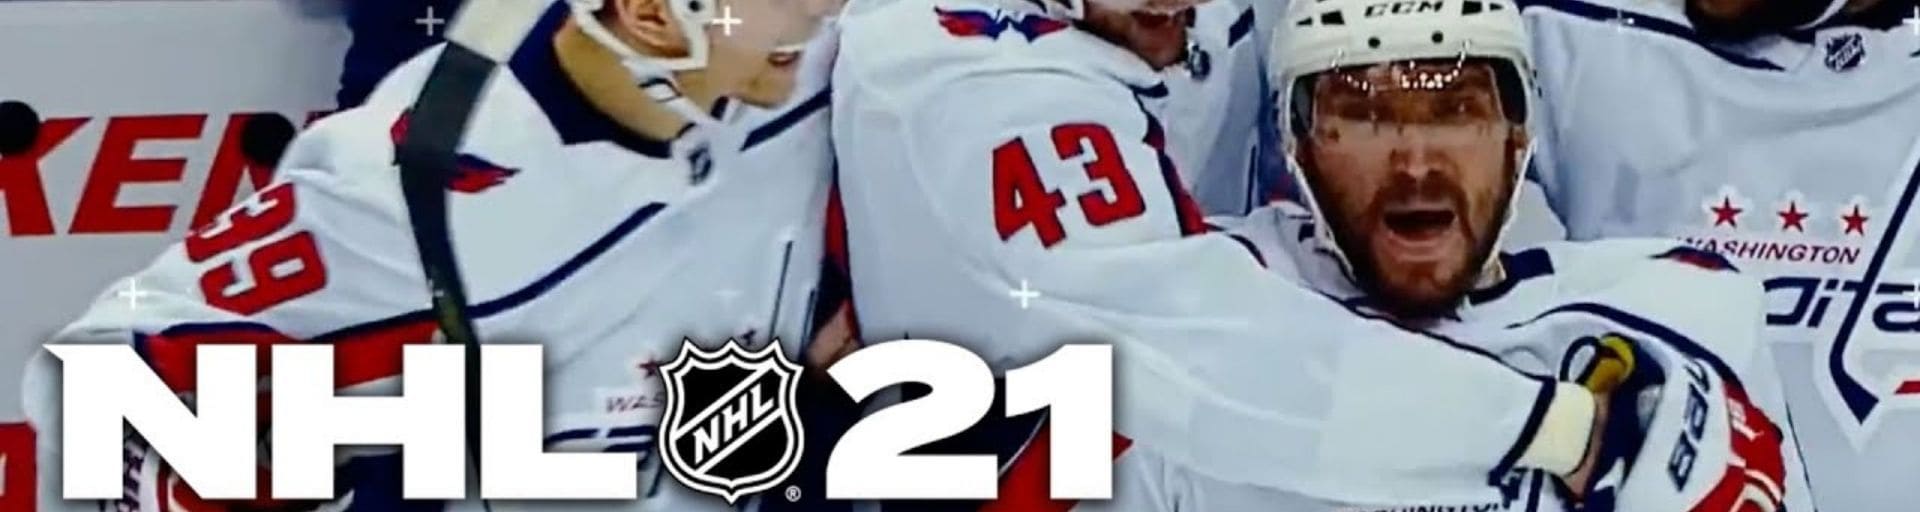 NHL 21: релиз игры с Овечкиным на обложке